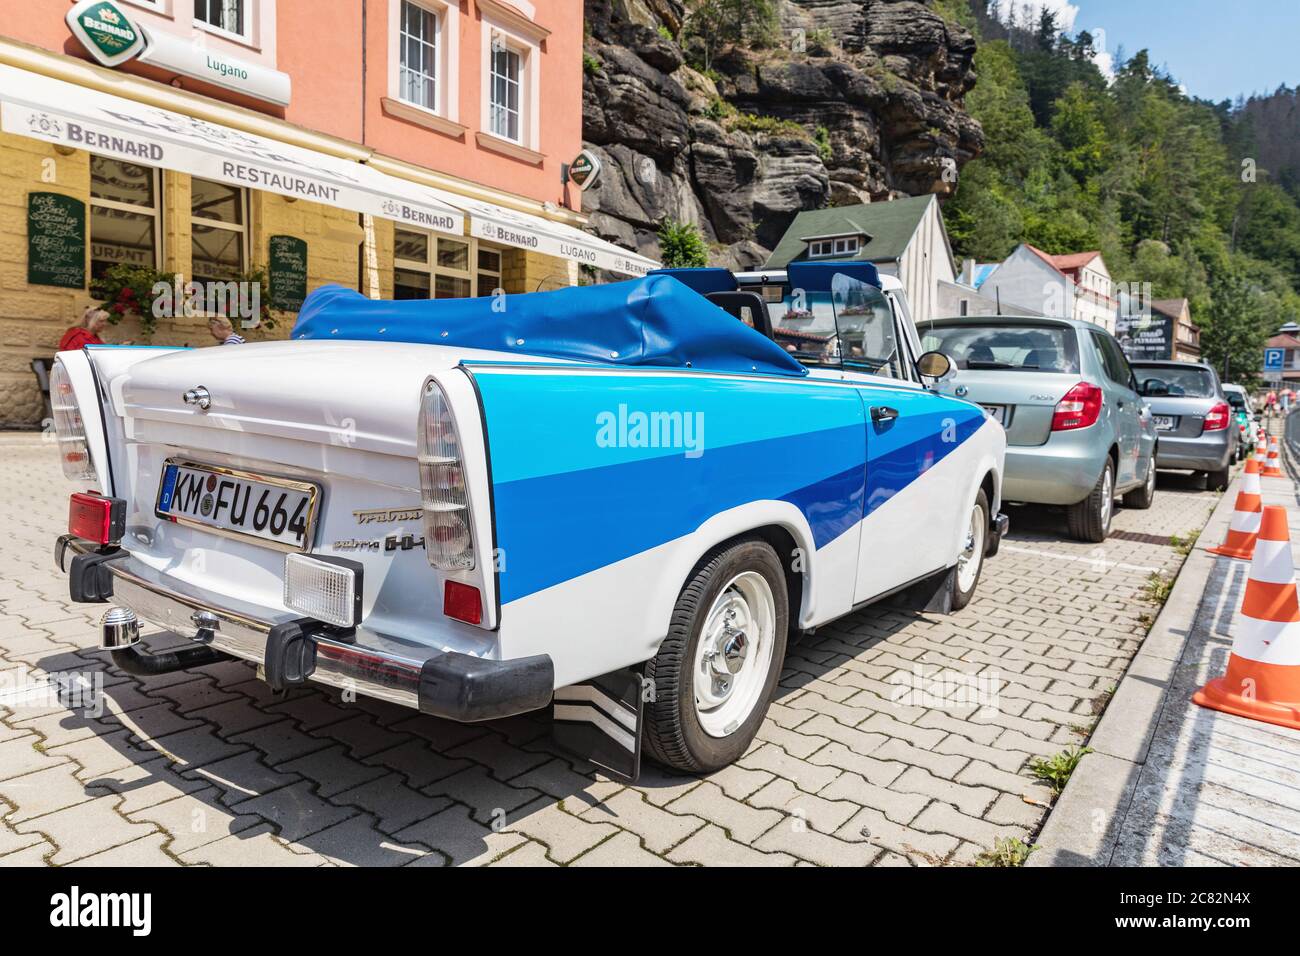 HRENSKO, TSCHECHISCHE REP - 19. JULI 2020. Historischer Trabant-Wagen, modifiziert als Cabriolet. Weiß-blauer trabant an einem sonnigen Tag in Hratensko, Tschechien. Stockfoto